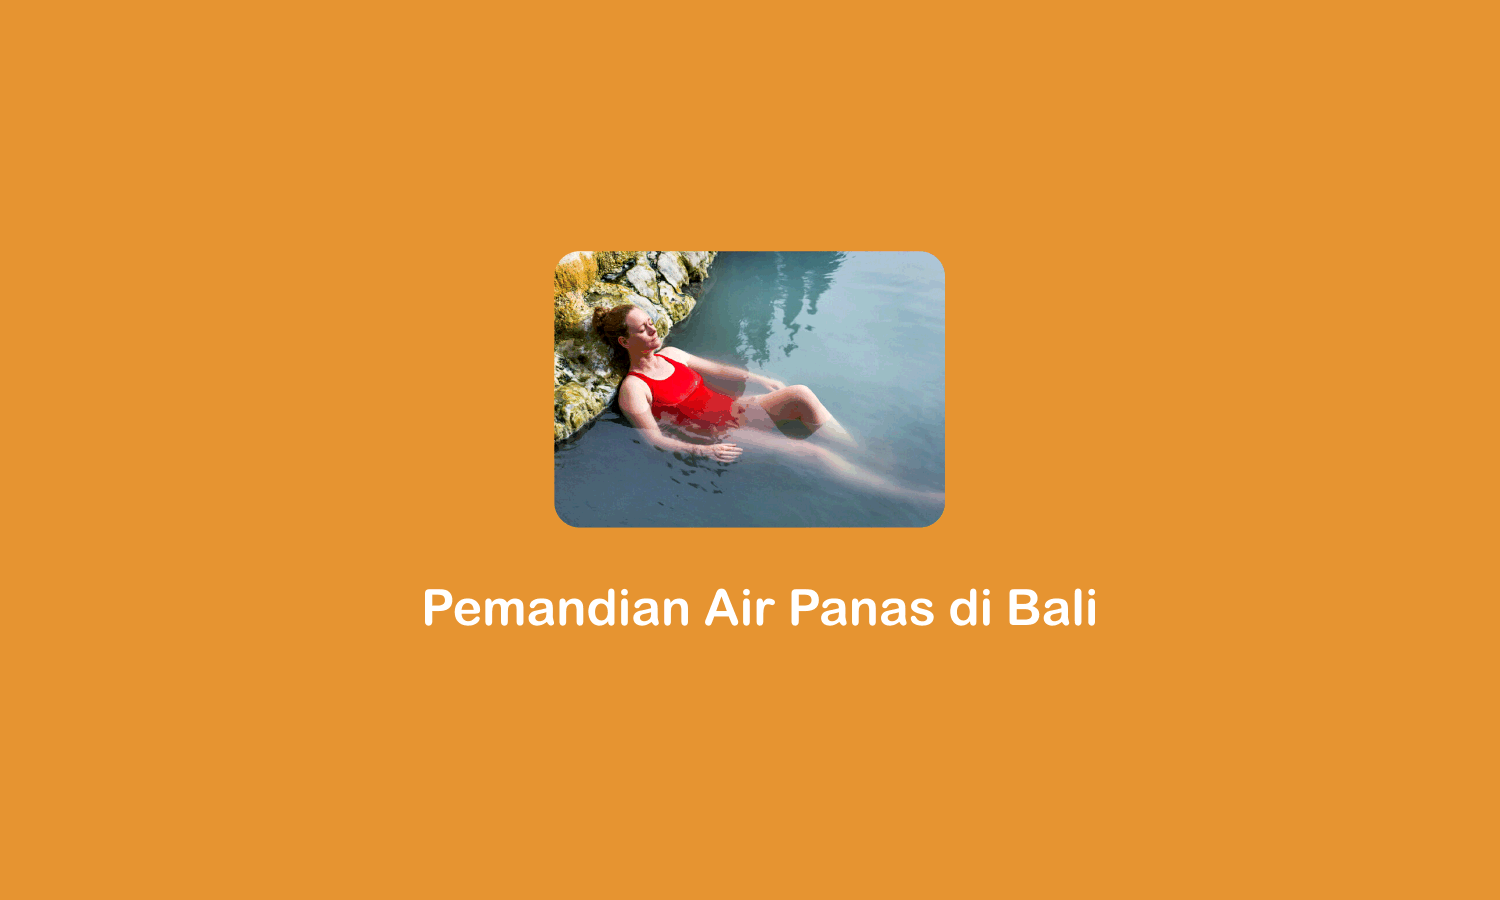 Pemandian Air Panas di Bali